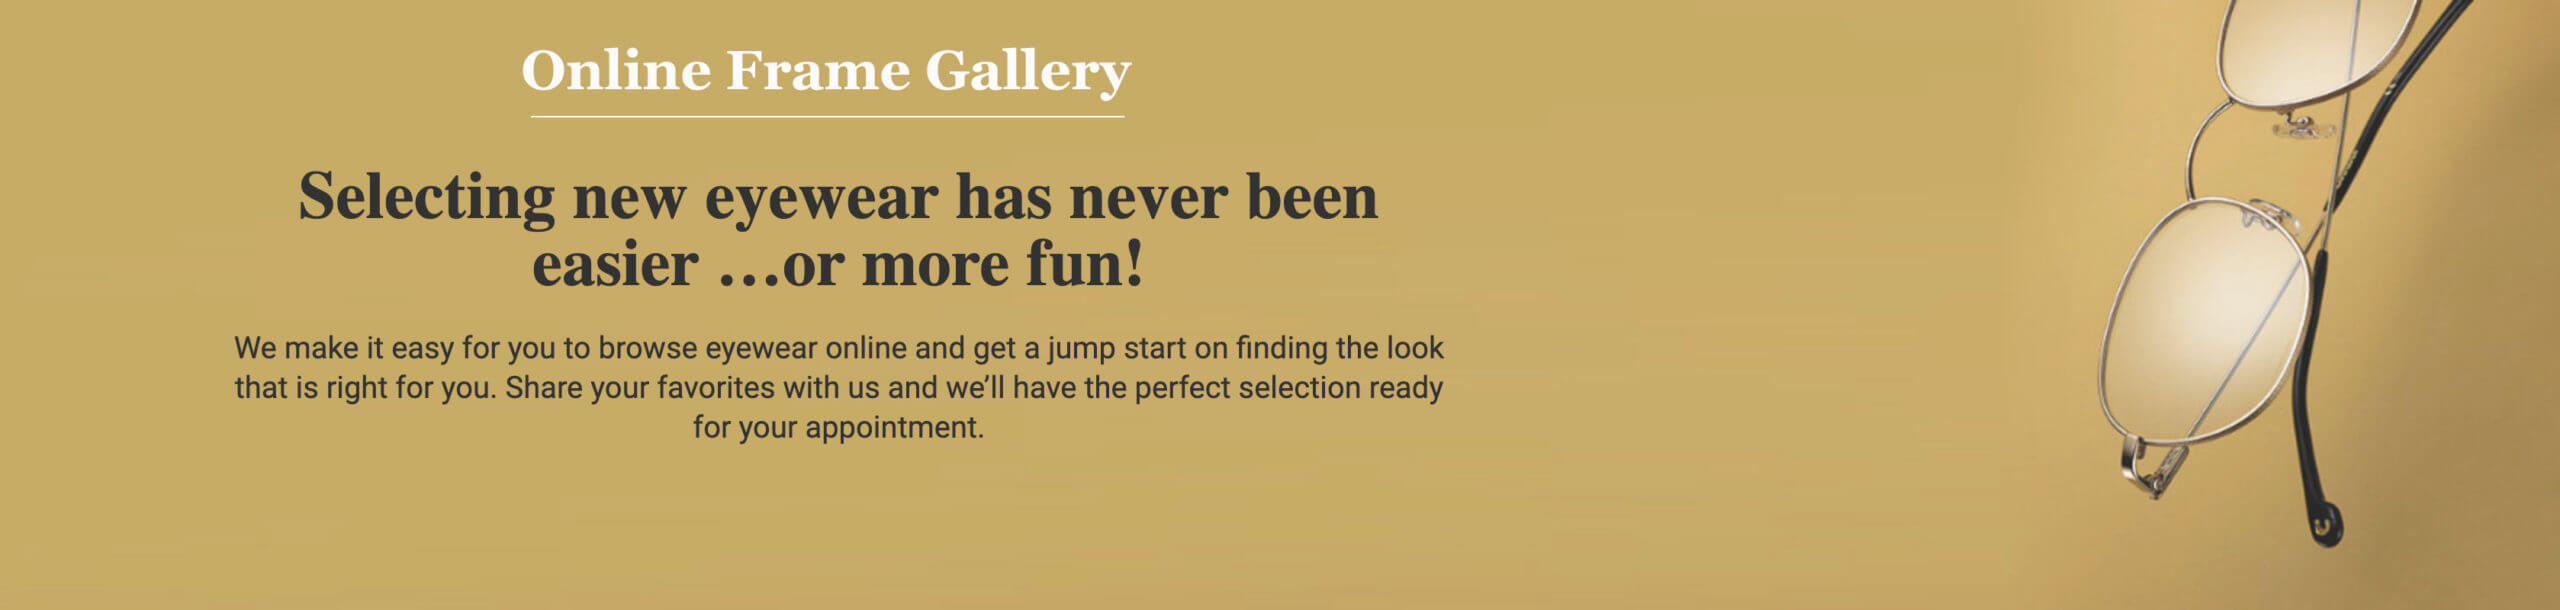 Frame Gallery Website